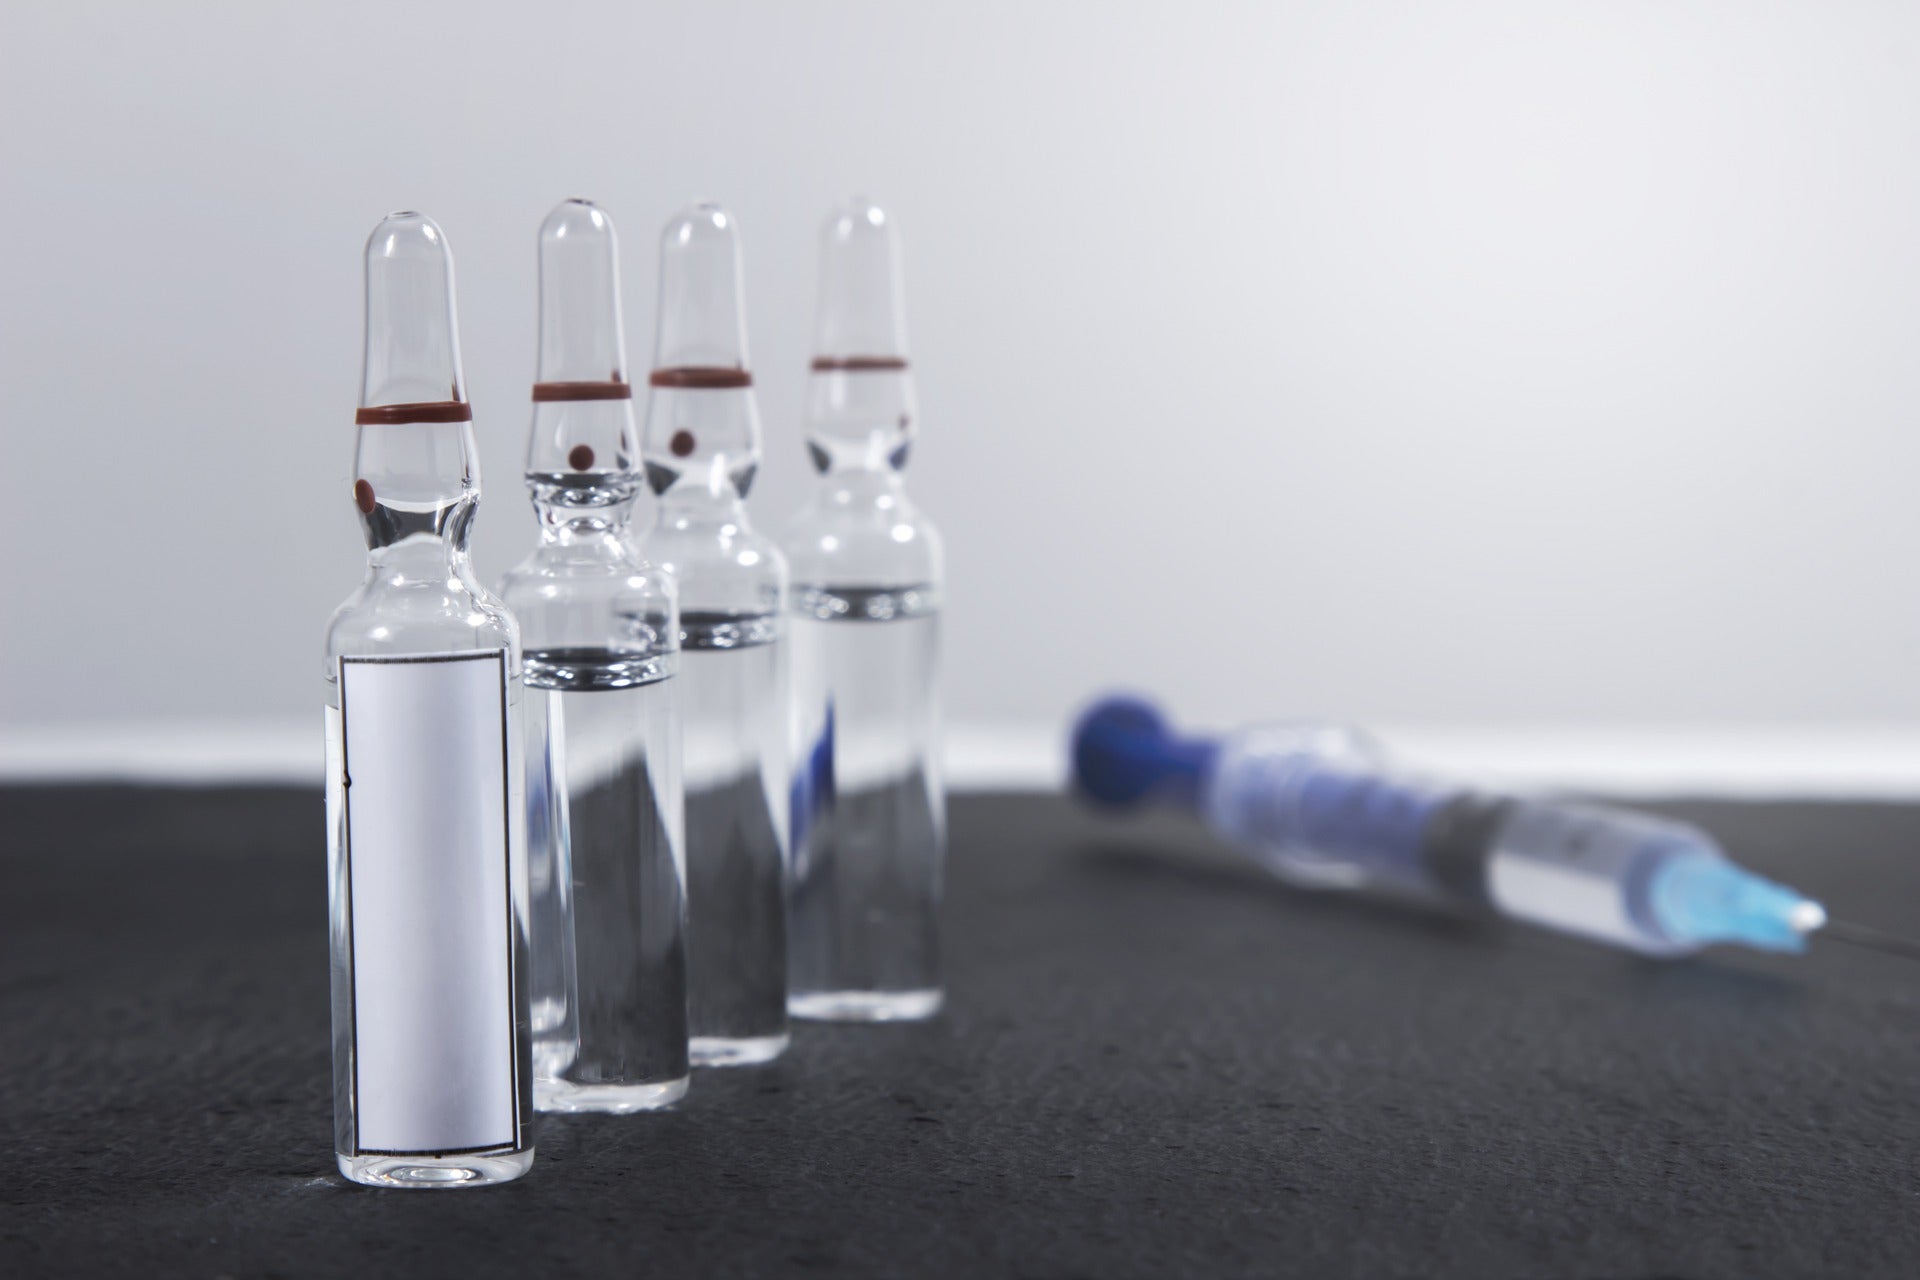 SFDA approves Moderna’s Covid-19 vaccine for use in Saudi Arabia